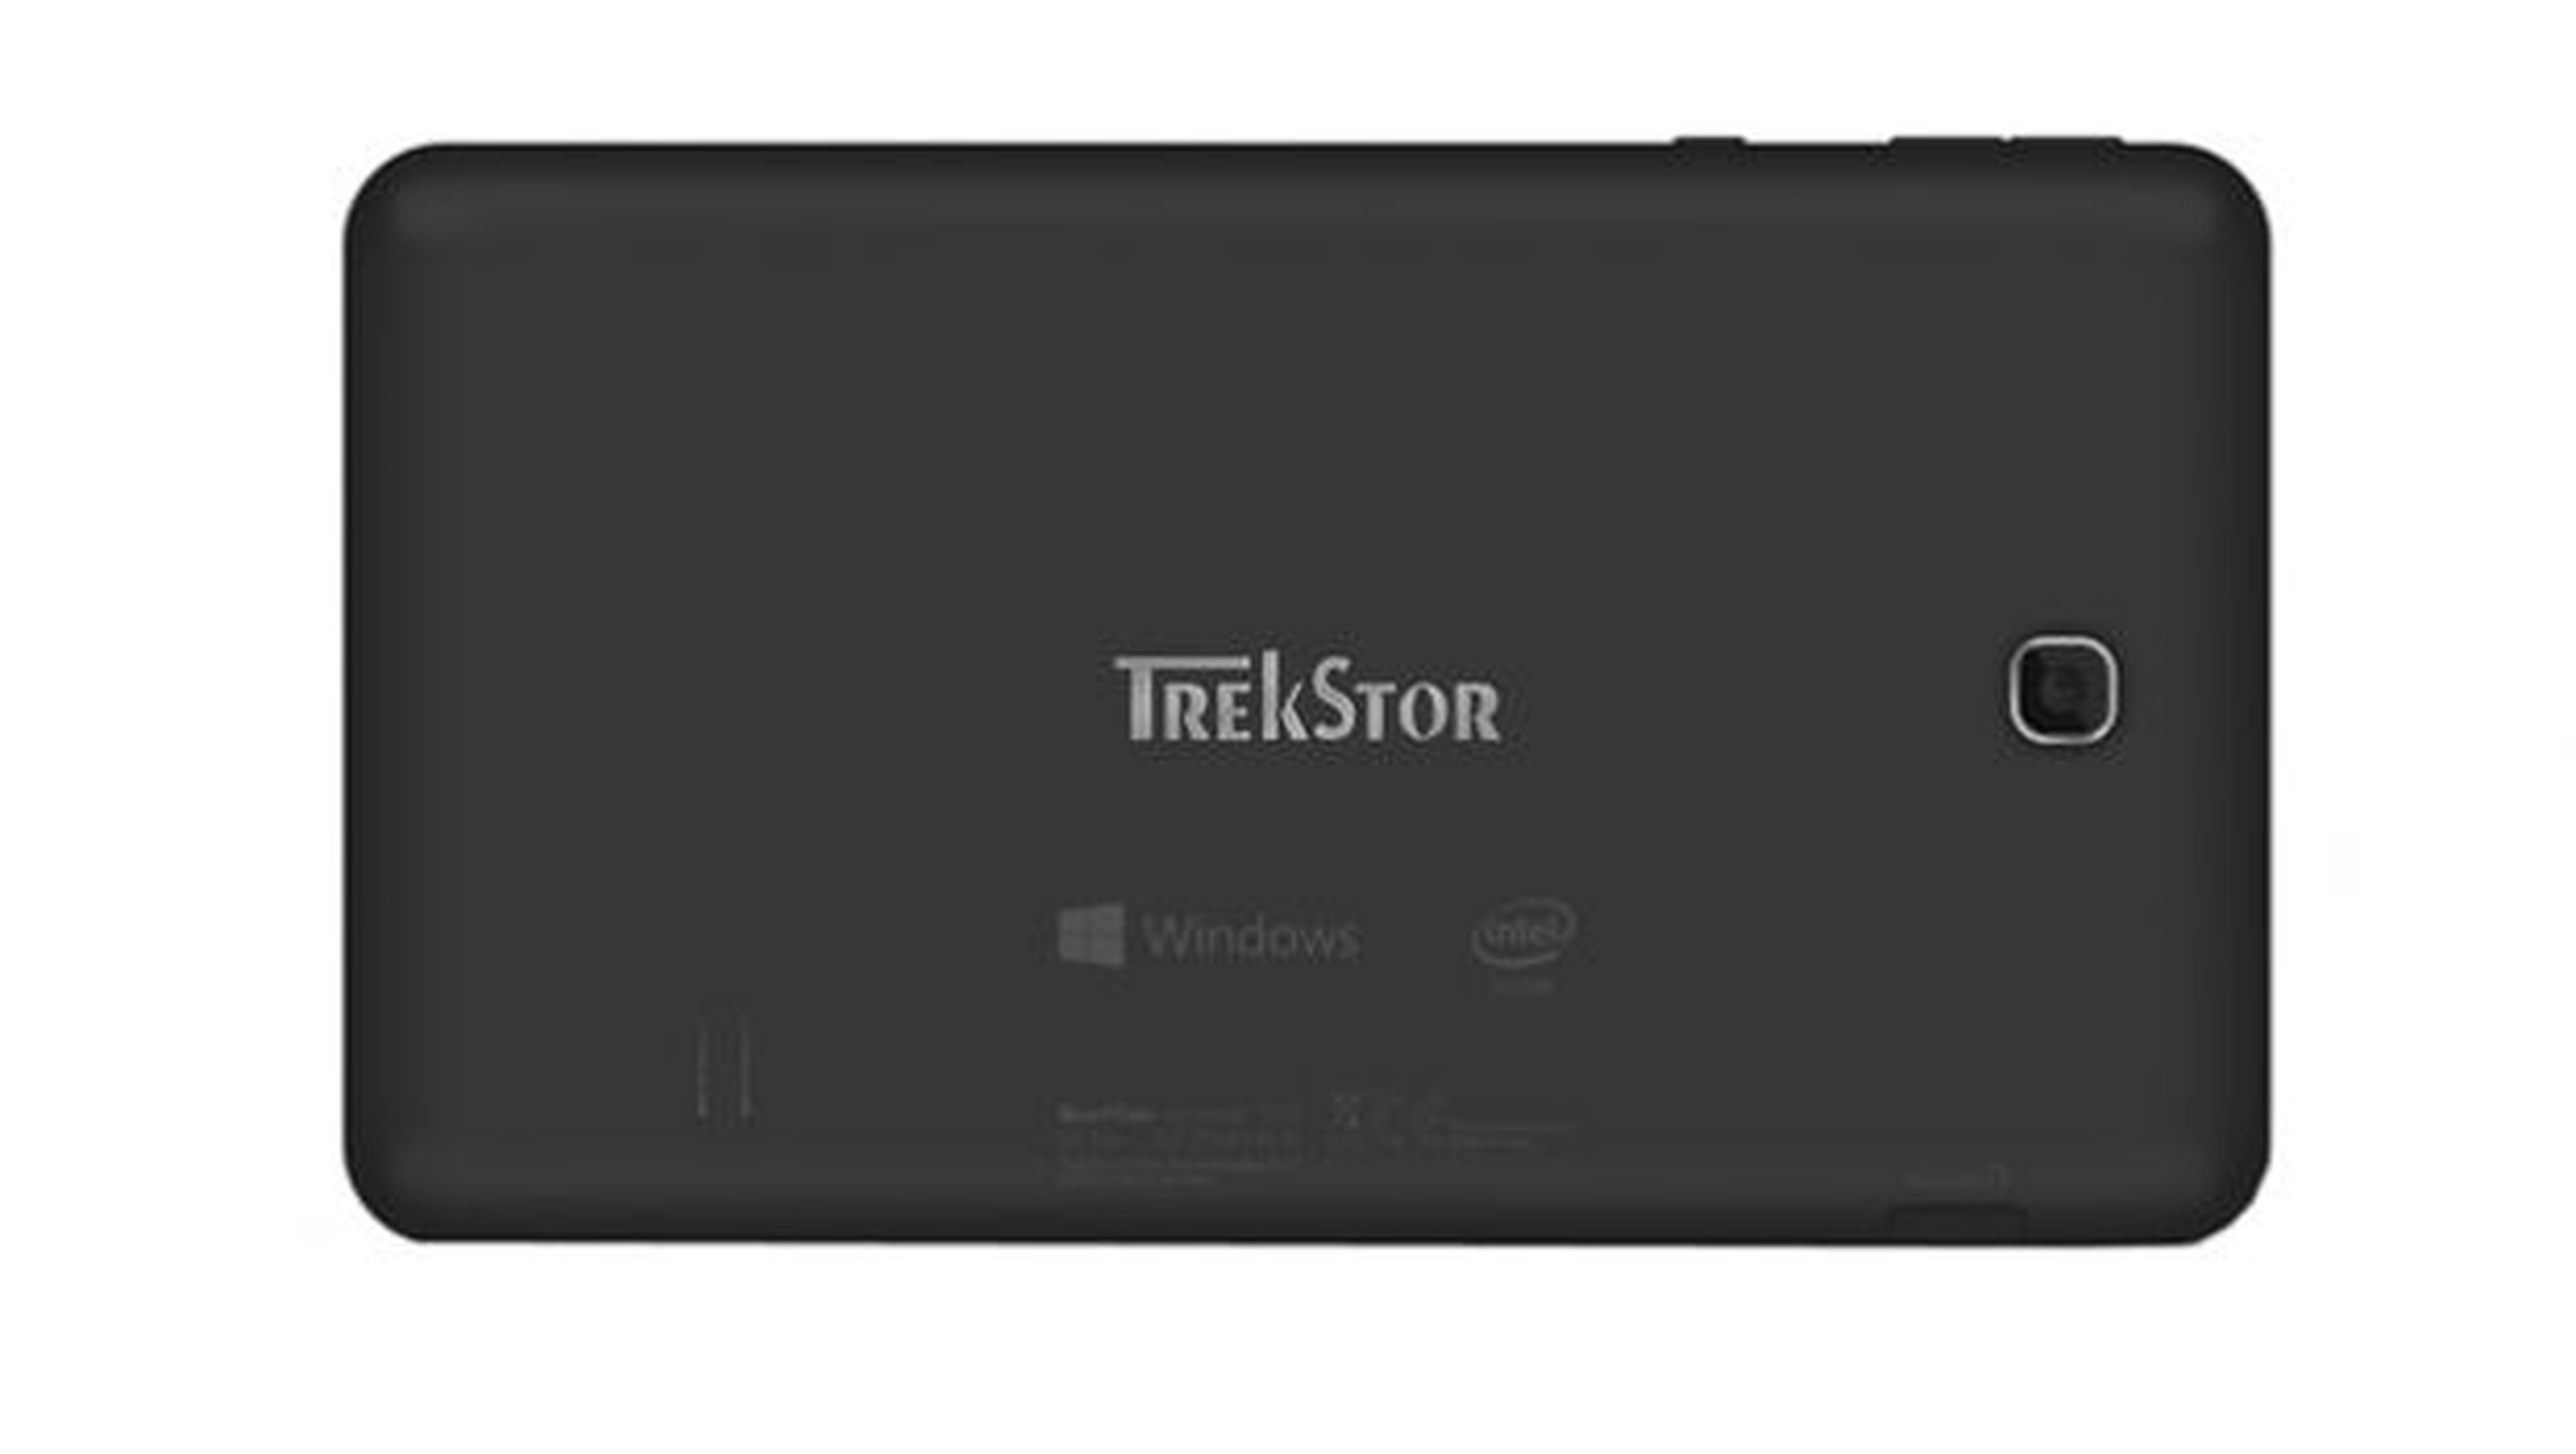 La TRekstor de 7 pulgadas es una de las tabletas con Windows 10 más económicas